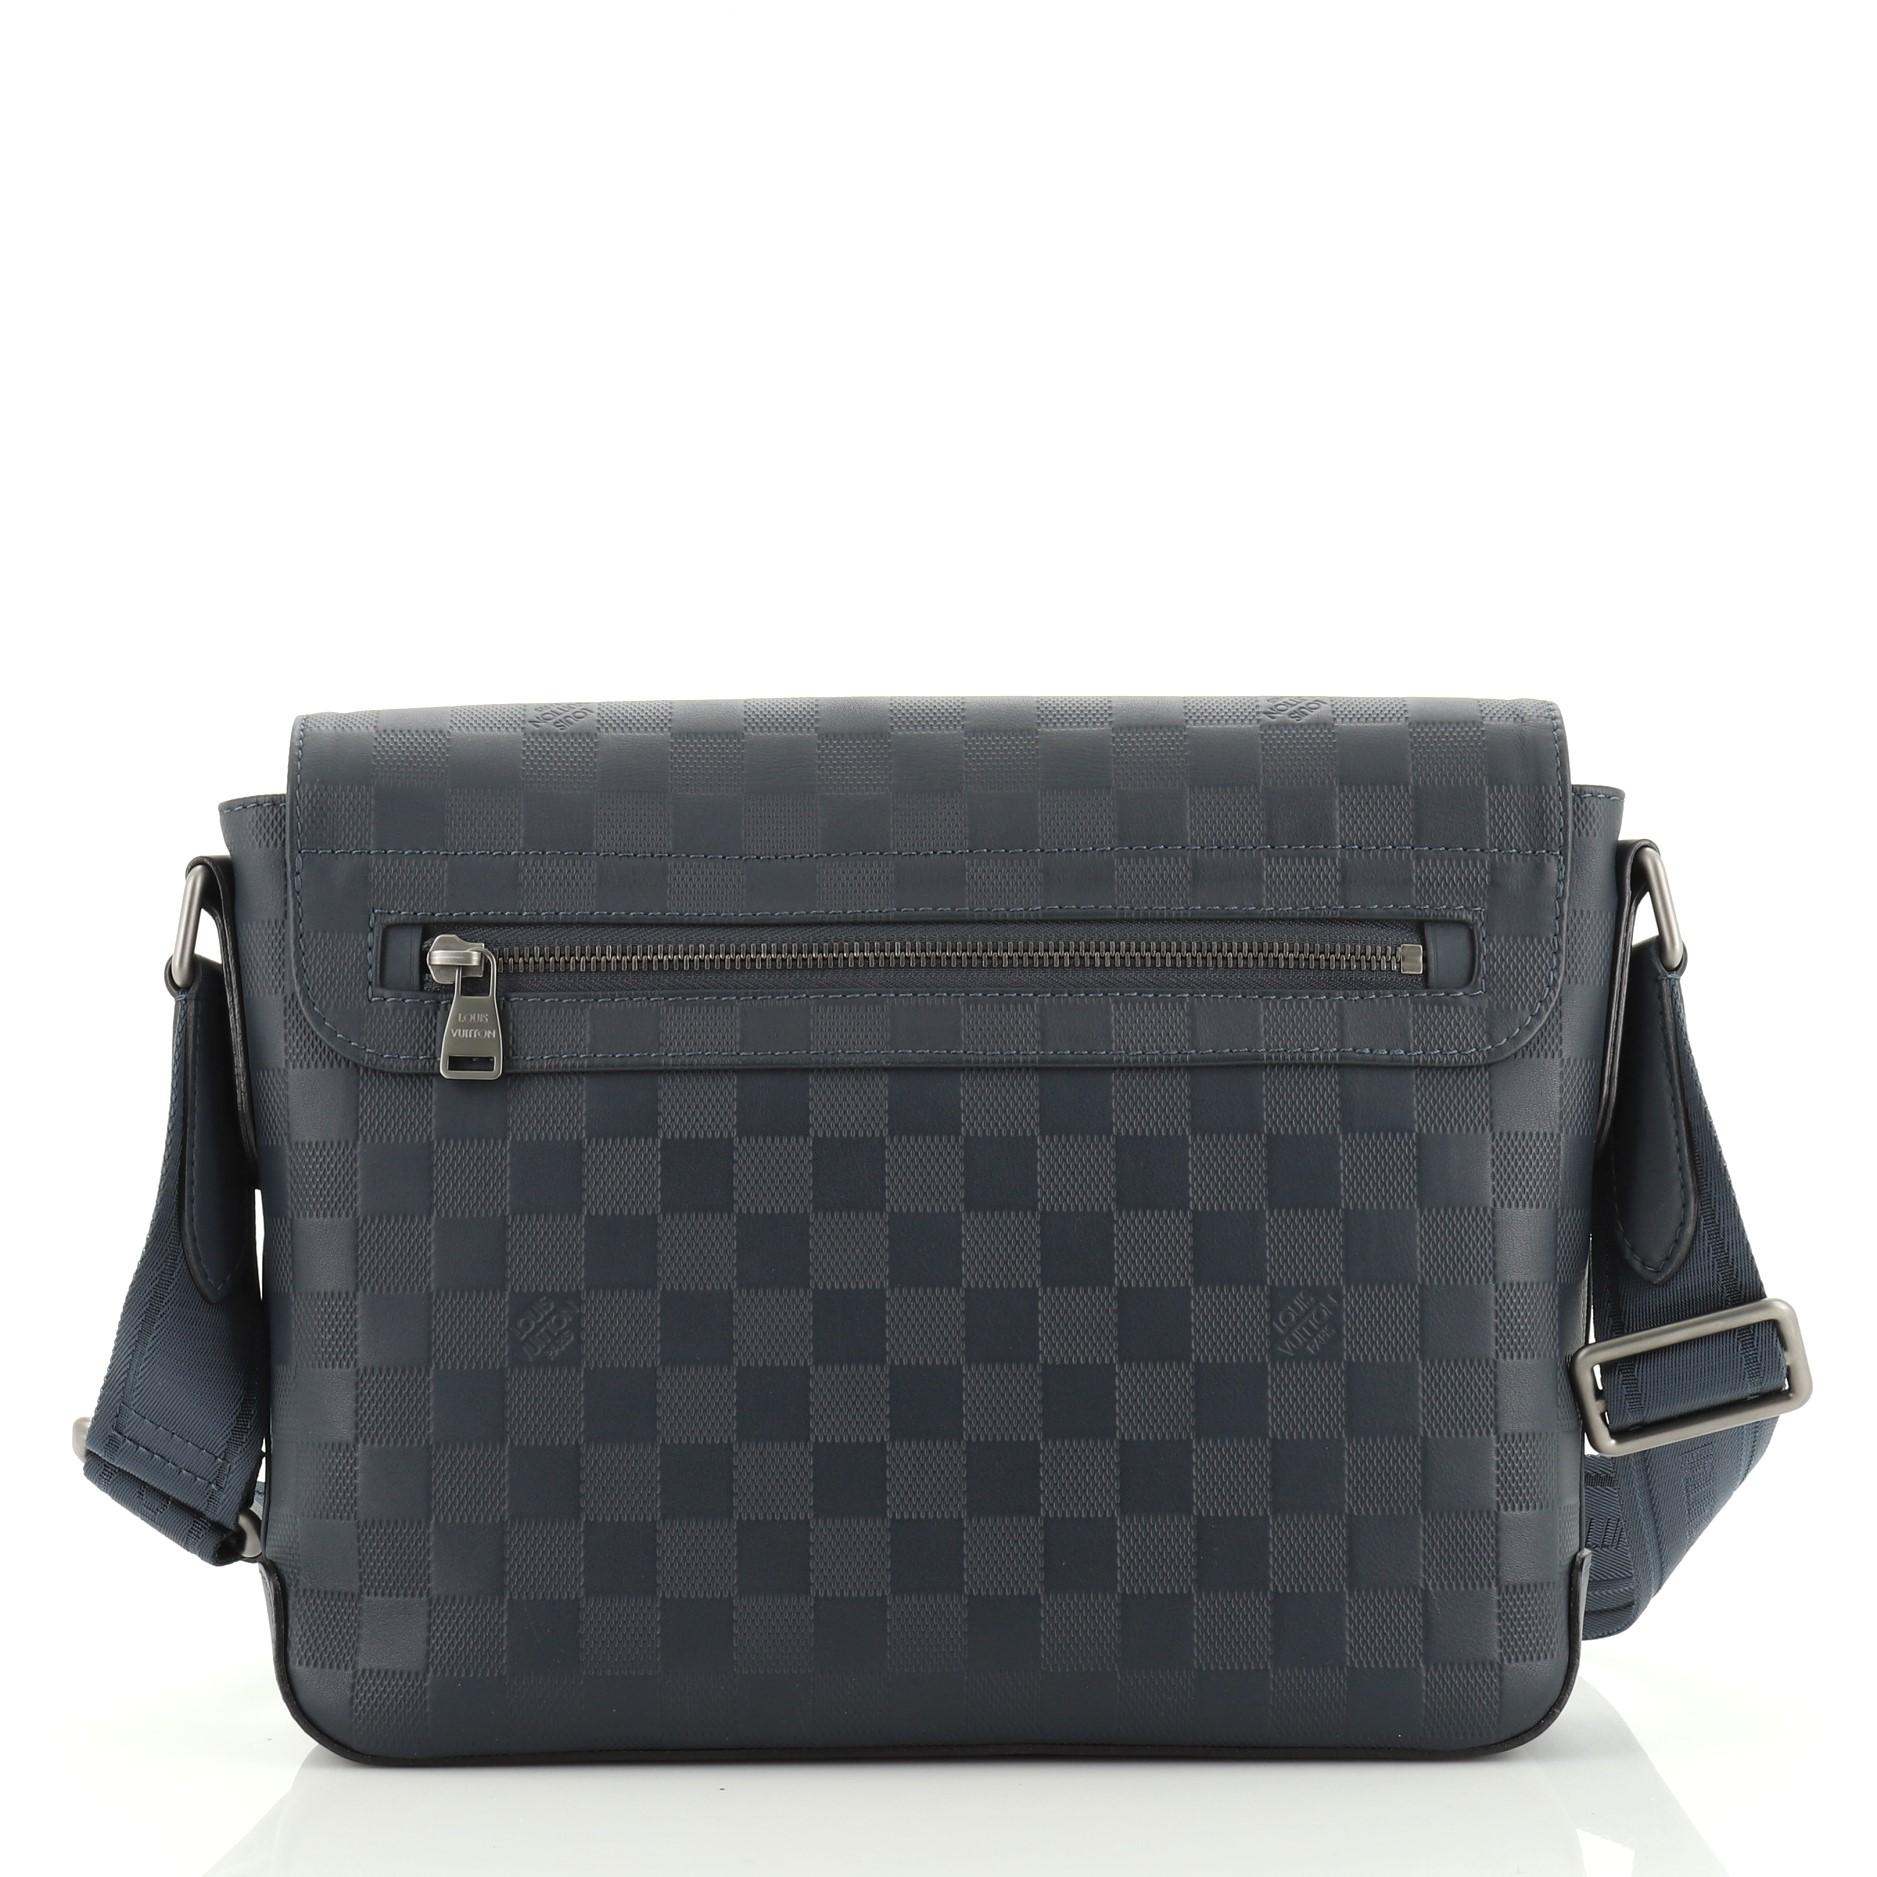 Black Louis Vuitton District Messenger Bag Damier Infini Leather PM